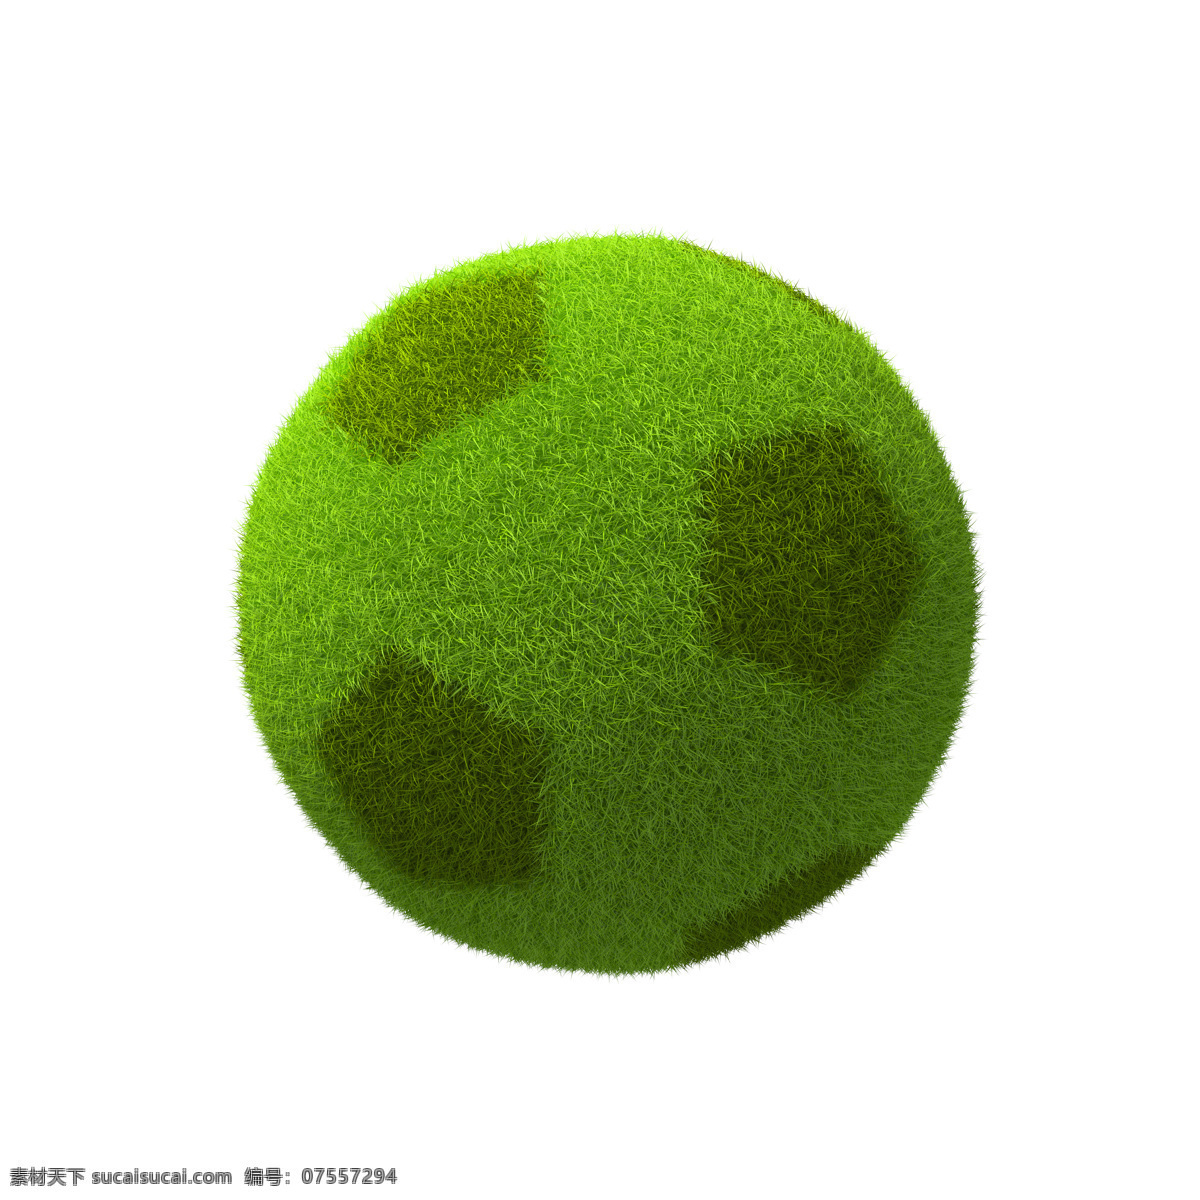 地球图片 地球 绿色地球 足球 立体地球 3d地球 三维地球 环境 地理 环保 环保广告 创意广告